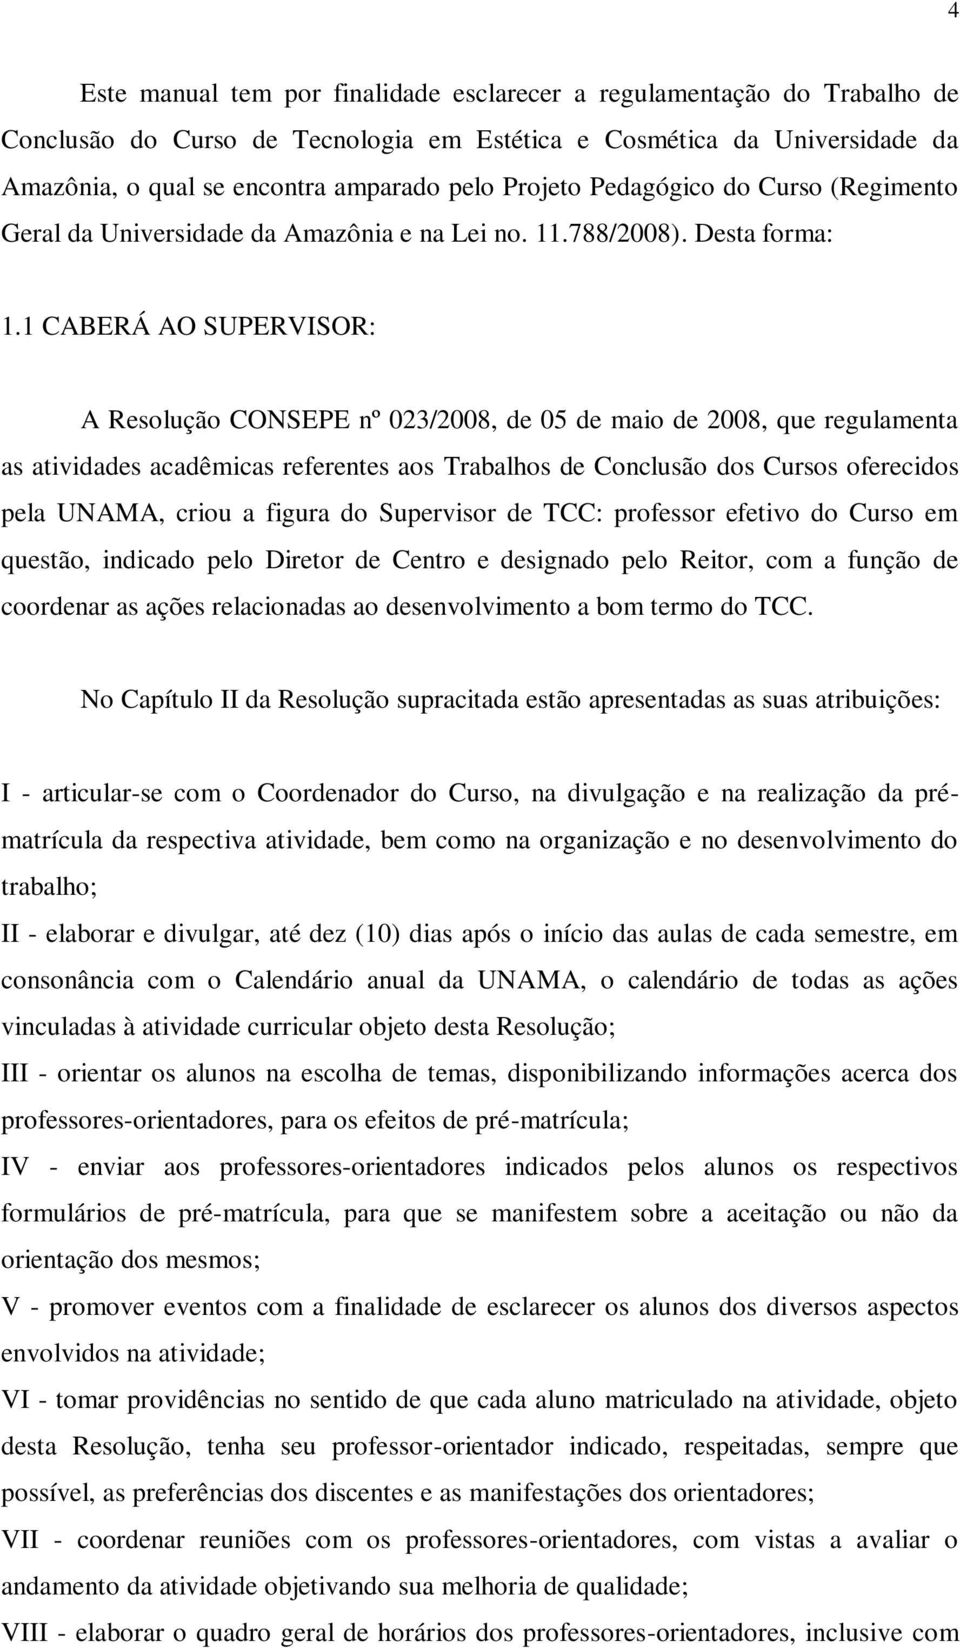 1 CABERÁ AO SUPERVISOR: A Resolução CONSEPE nº 023/2008, de 05 de maio de 2008, que regulamenta as atividades acadêmicas referentes aos Trabalhos de Conclusão dos Cursos oferecidos pela UNAMA, criou